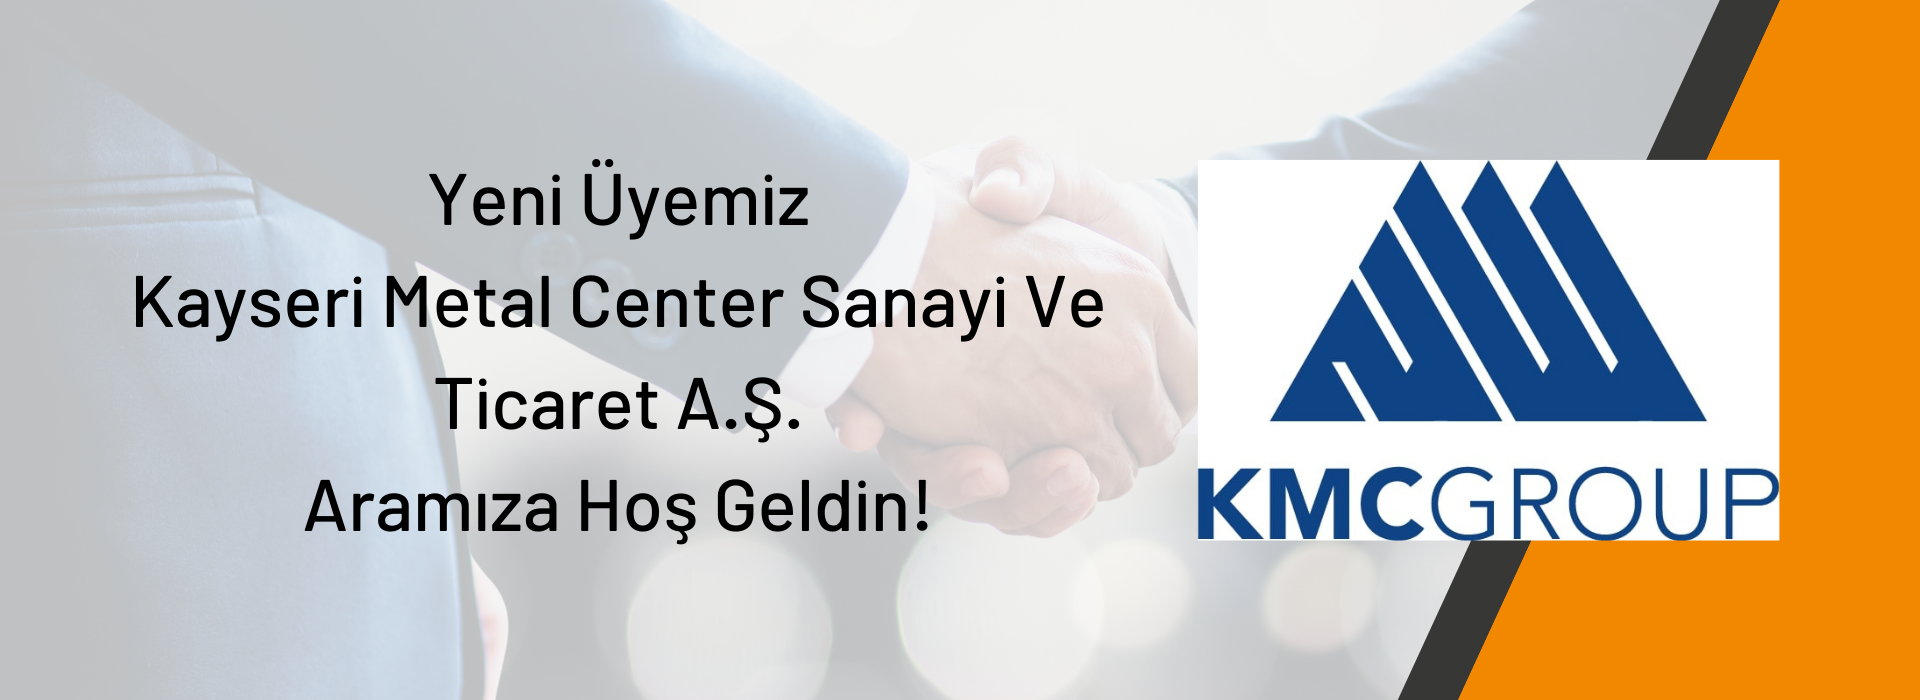 Yeni Üyemiz  Kayseri Metal Center Sanayi Ve Ticaret A.Ş.  Aramıza Hoş Geldin!